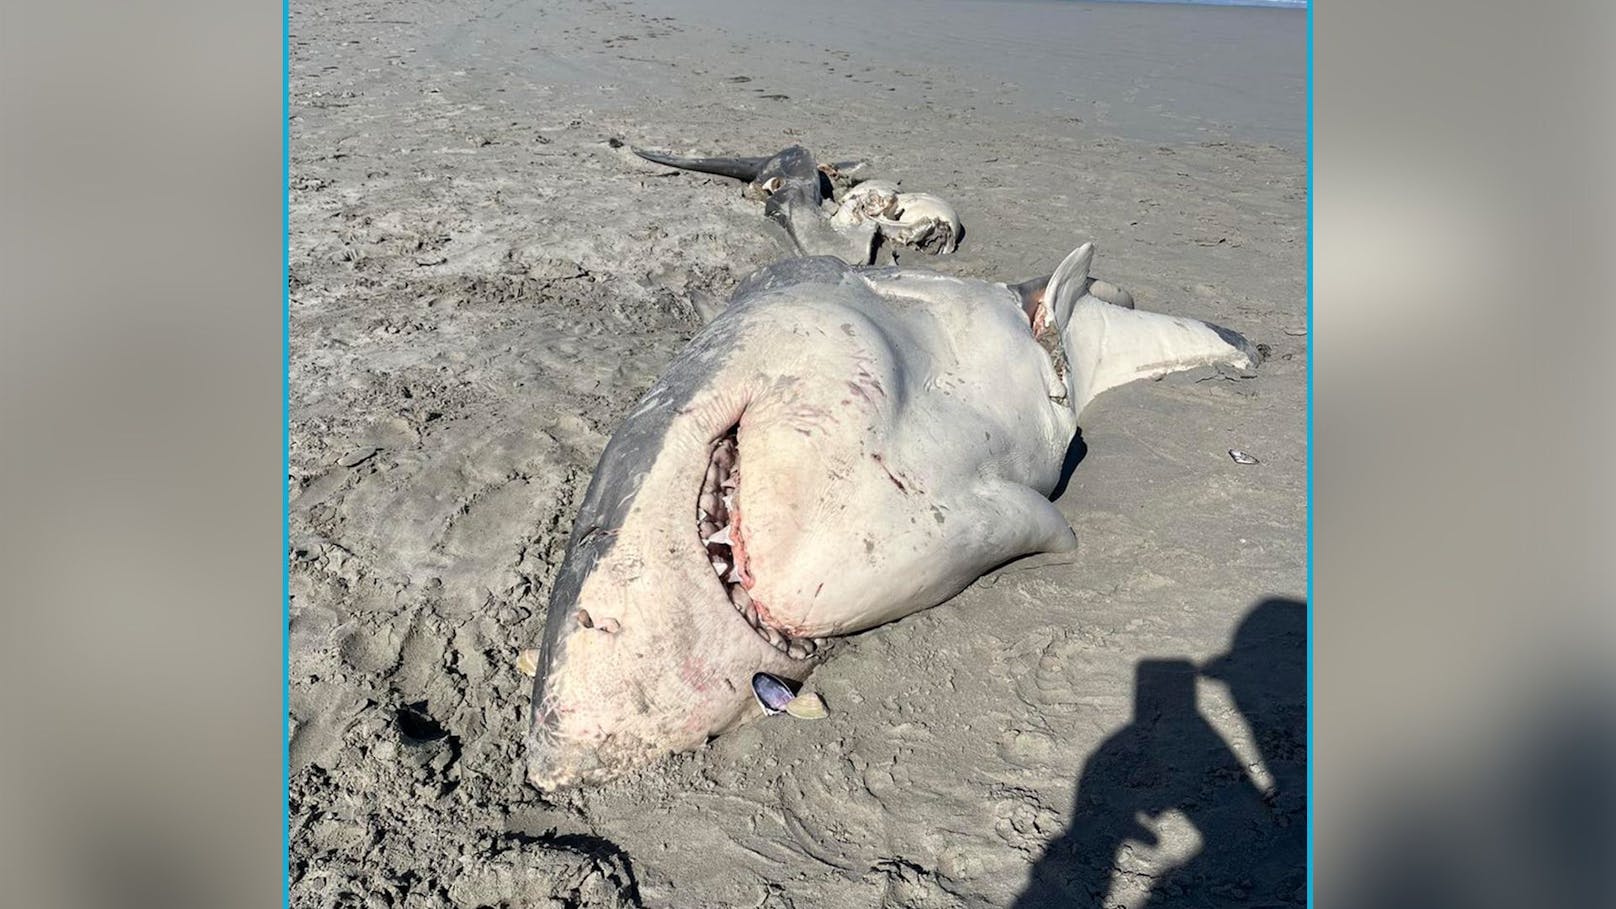 Weißer Hai komplett zerfetzt am Strand! Wer ist schuld?